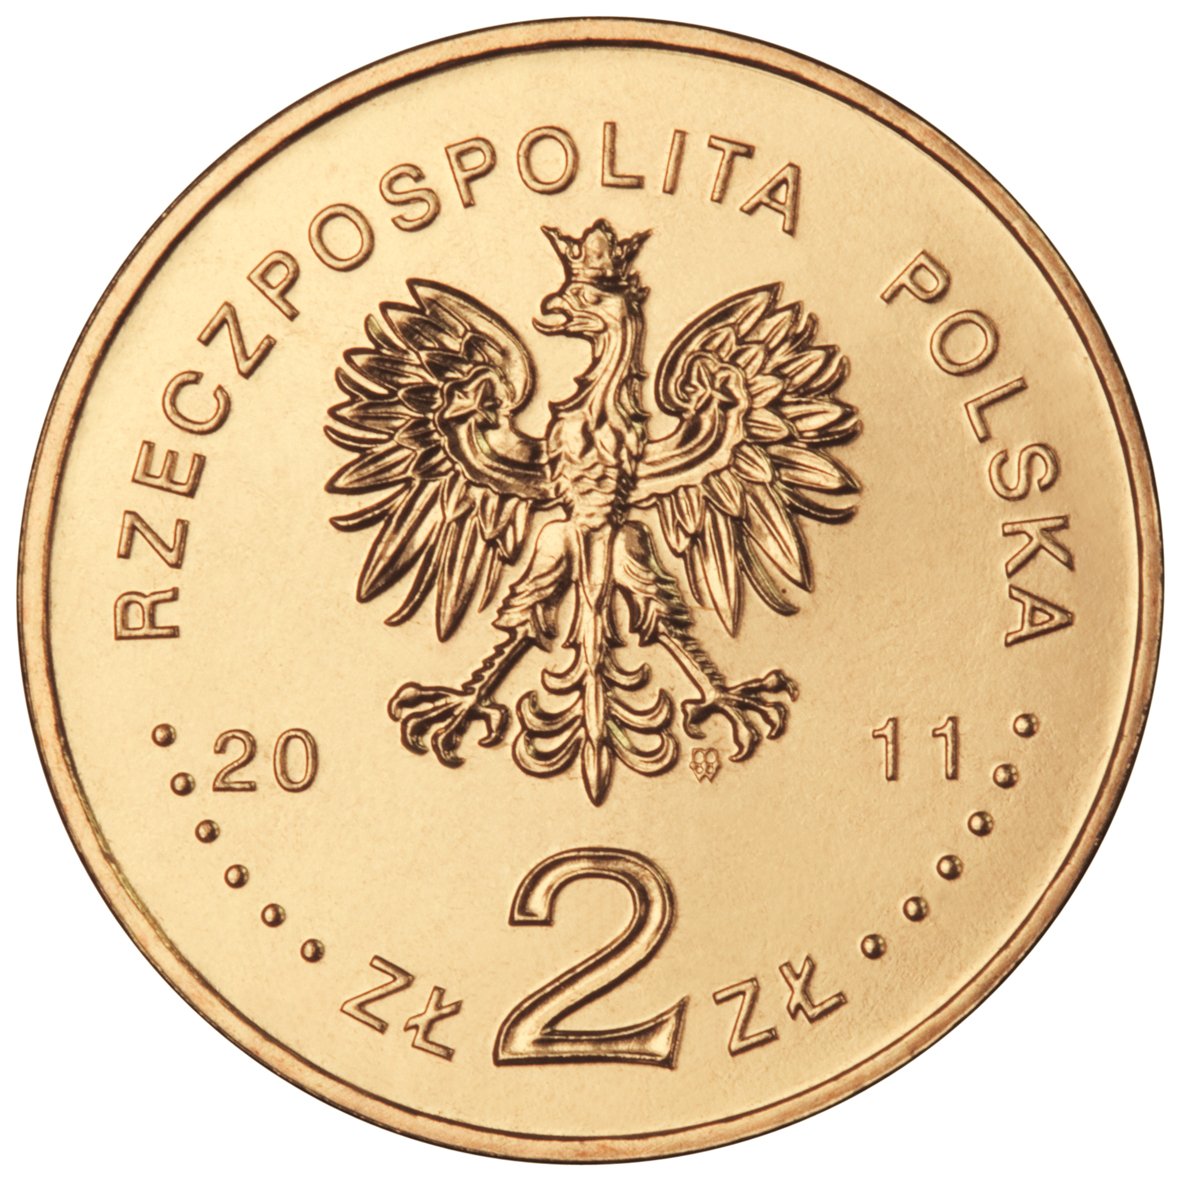 2zl-poznan-awers-monety